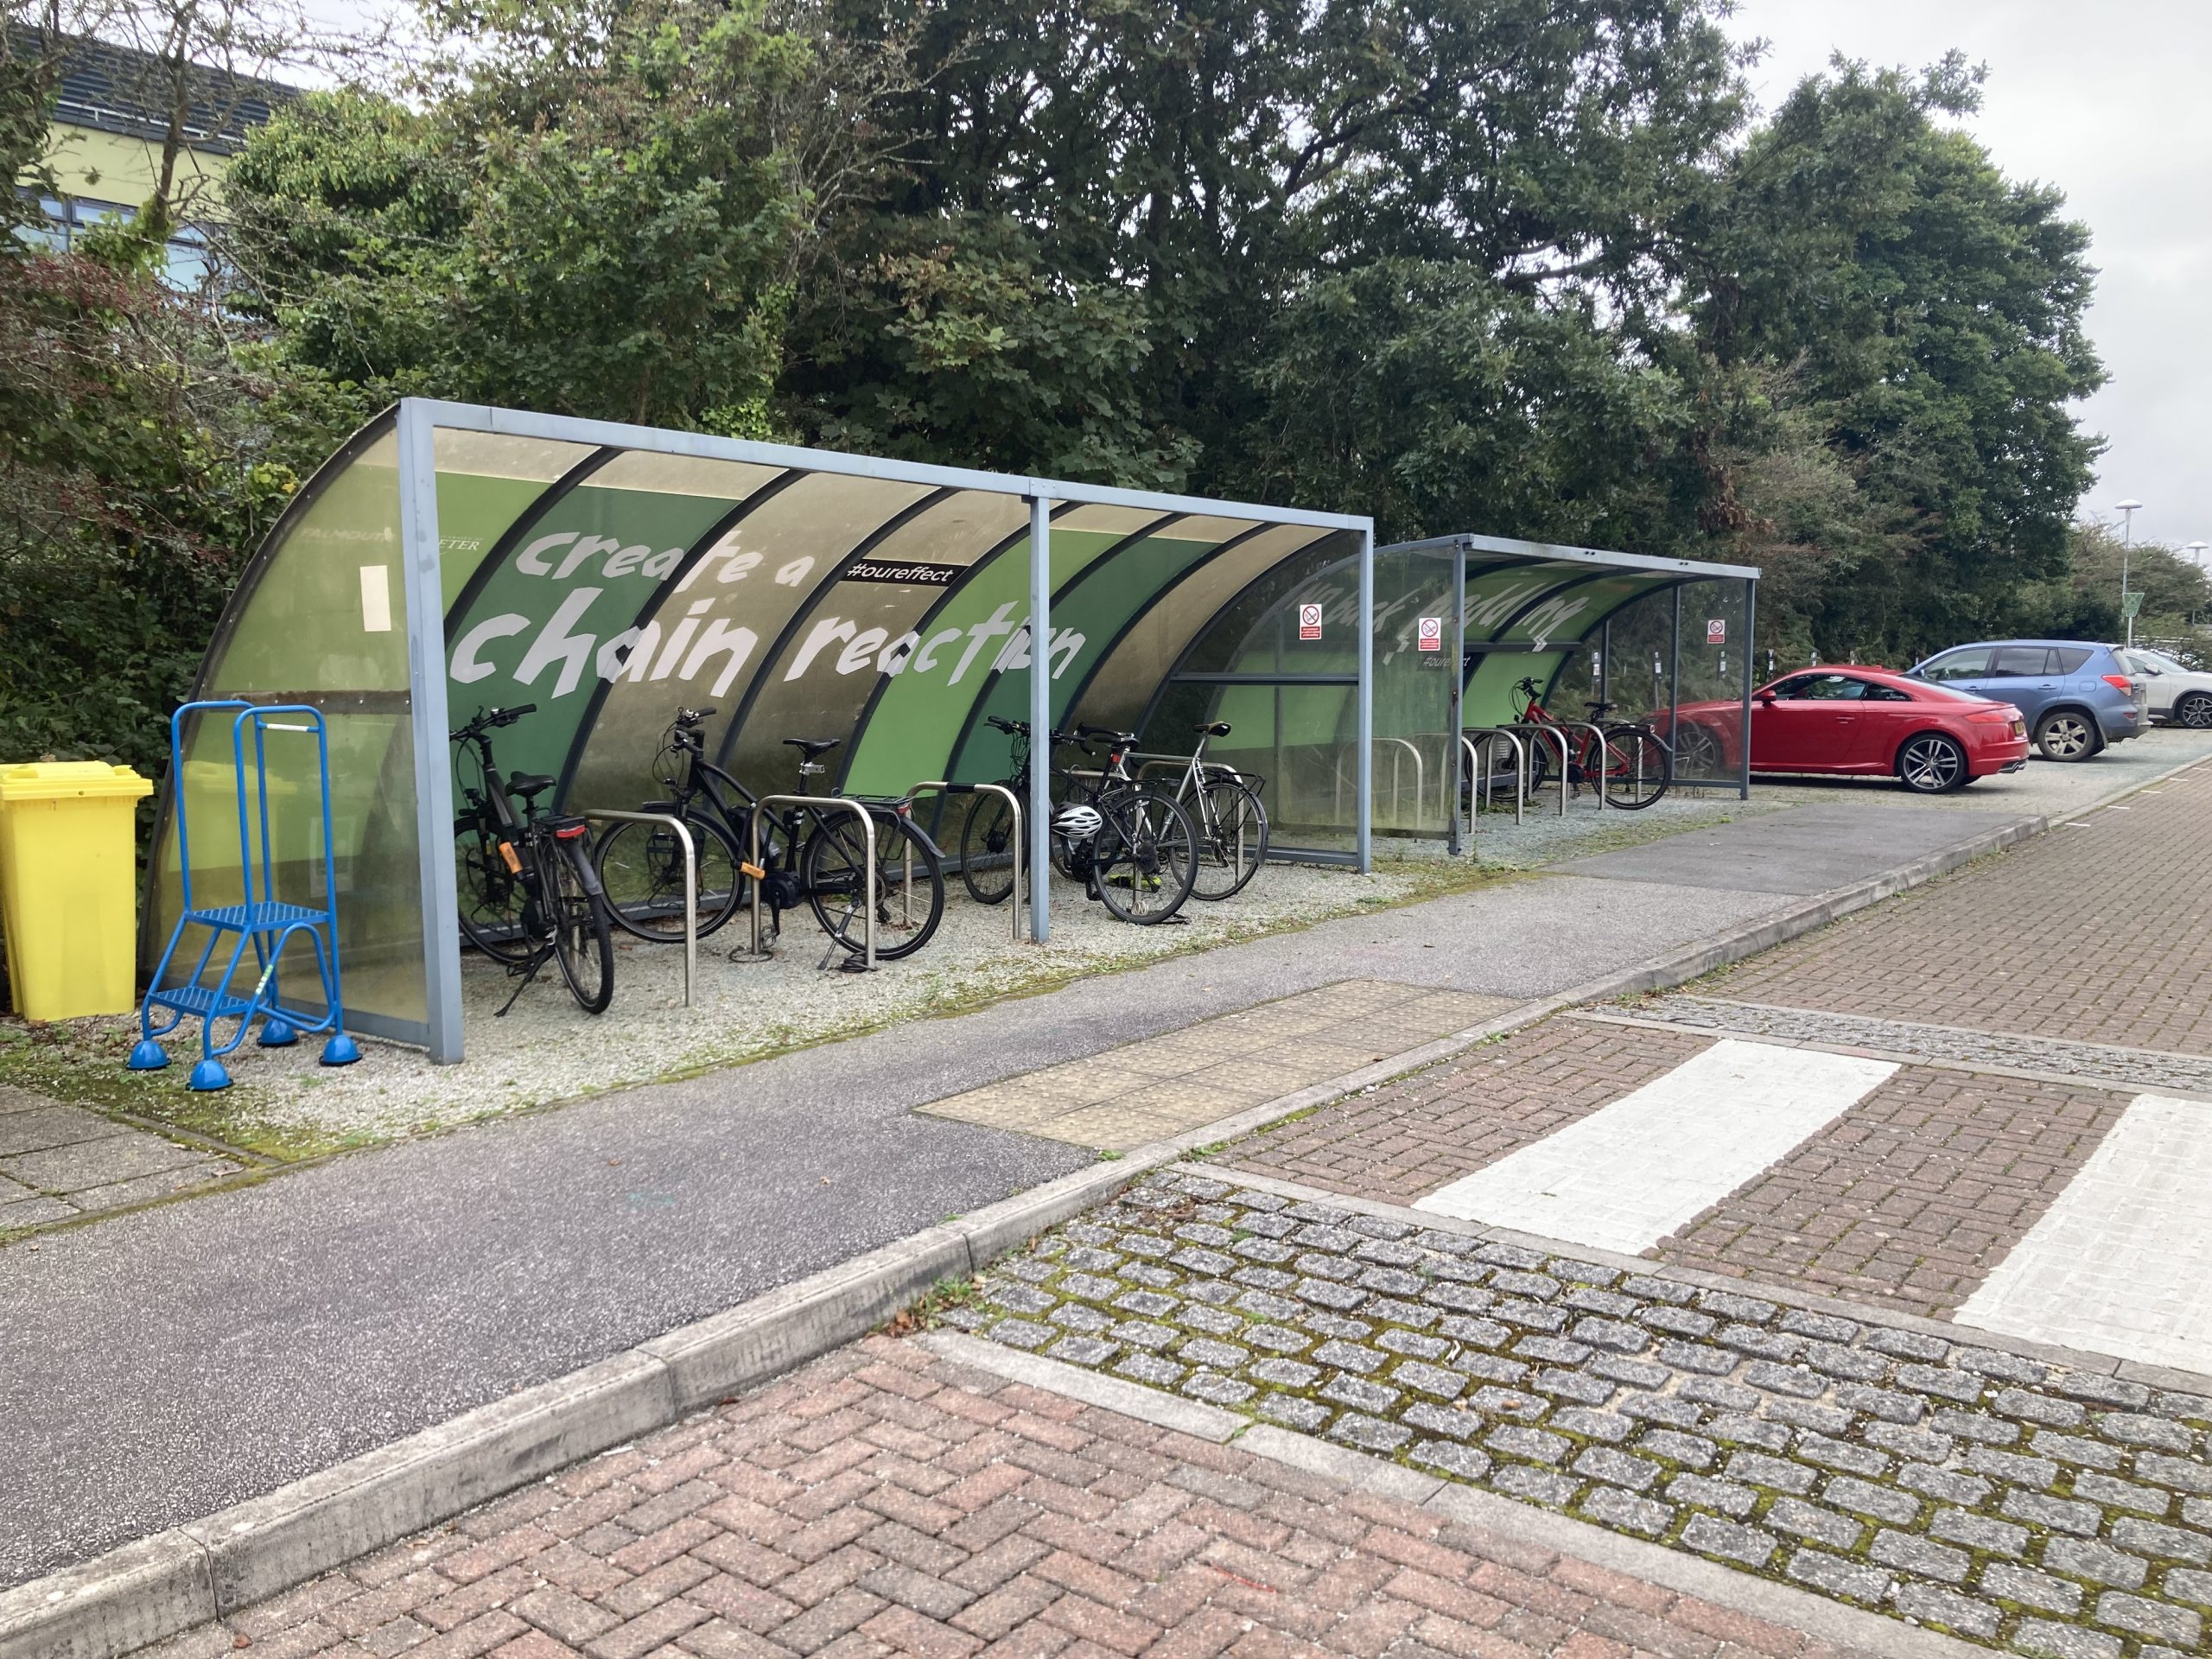 Cycling facilities at Penryn campus